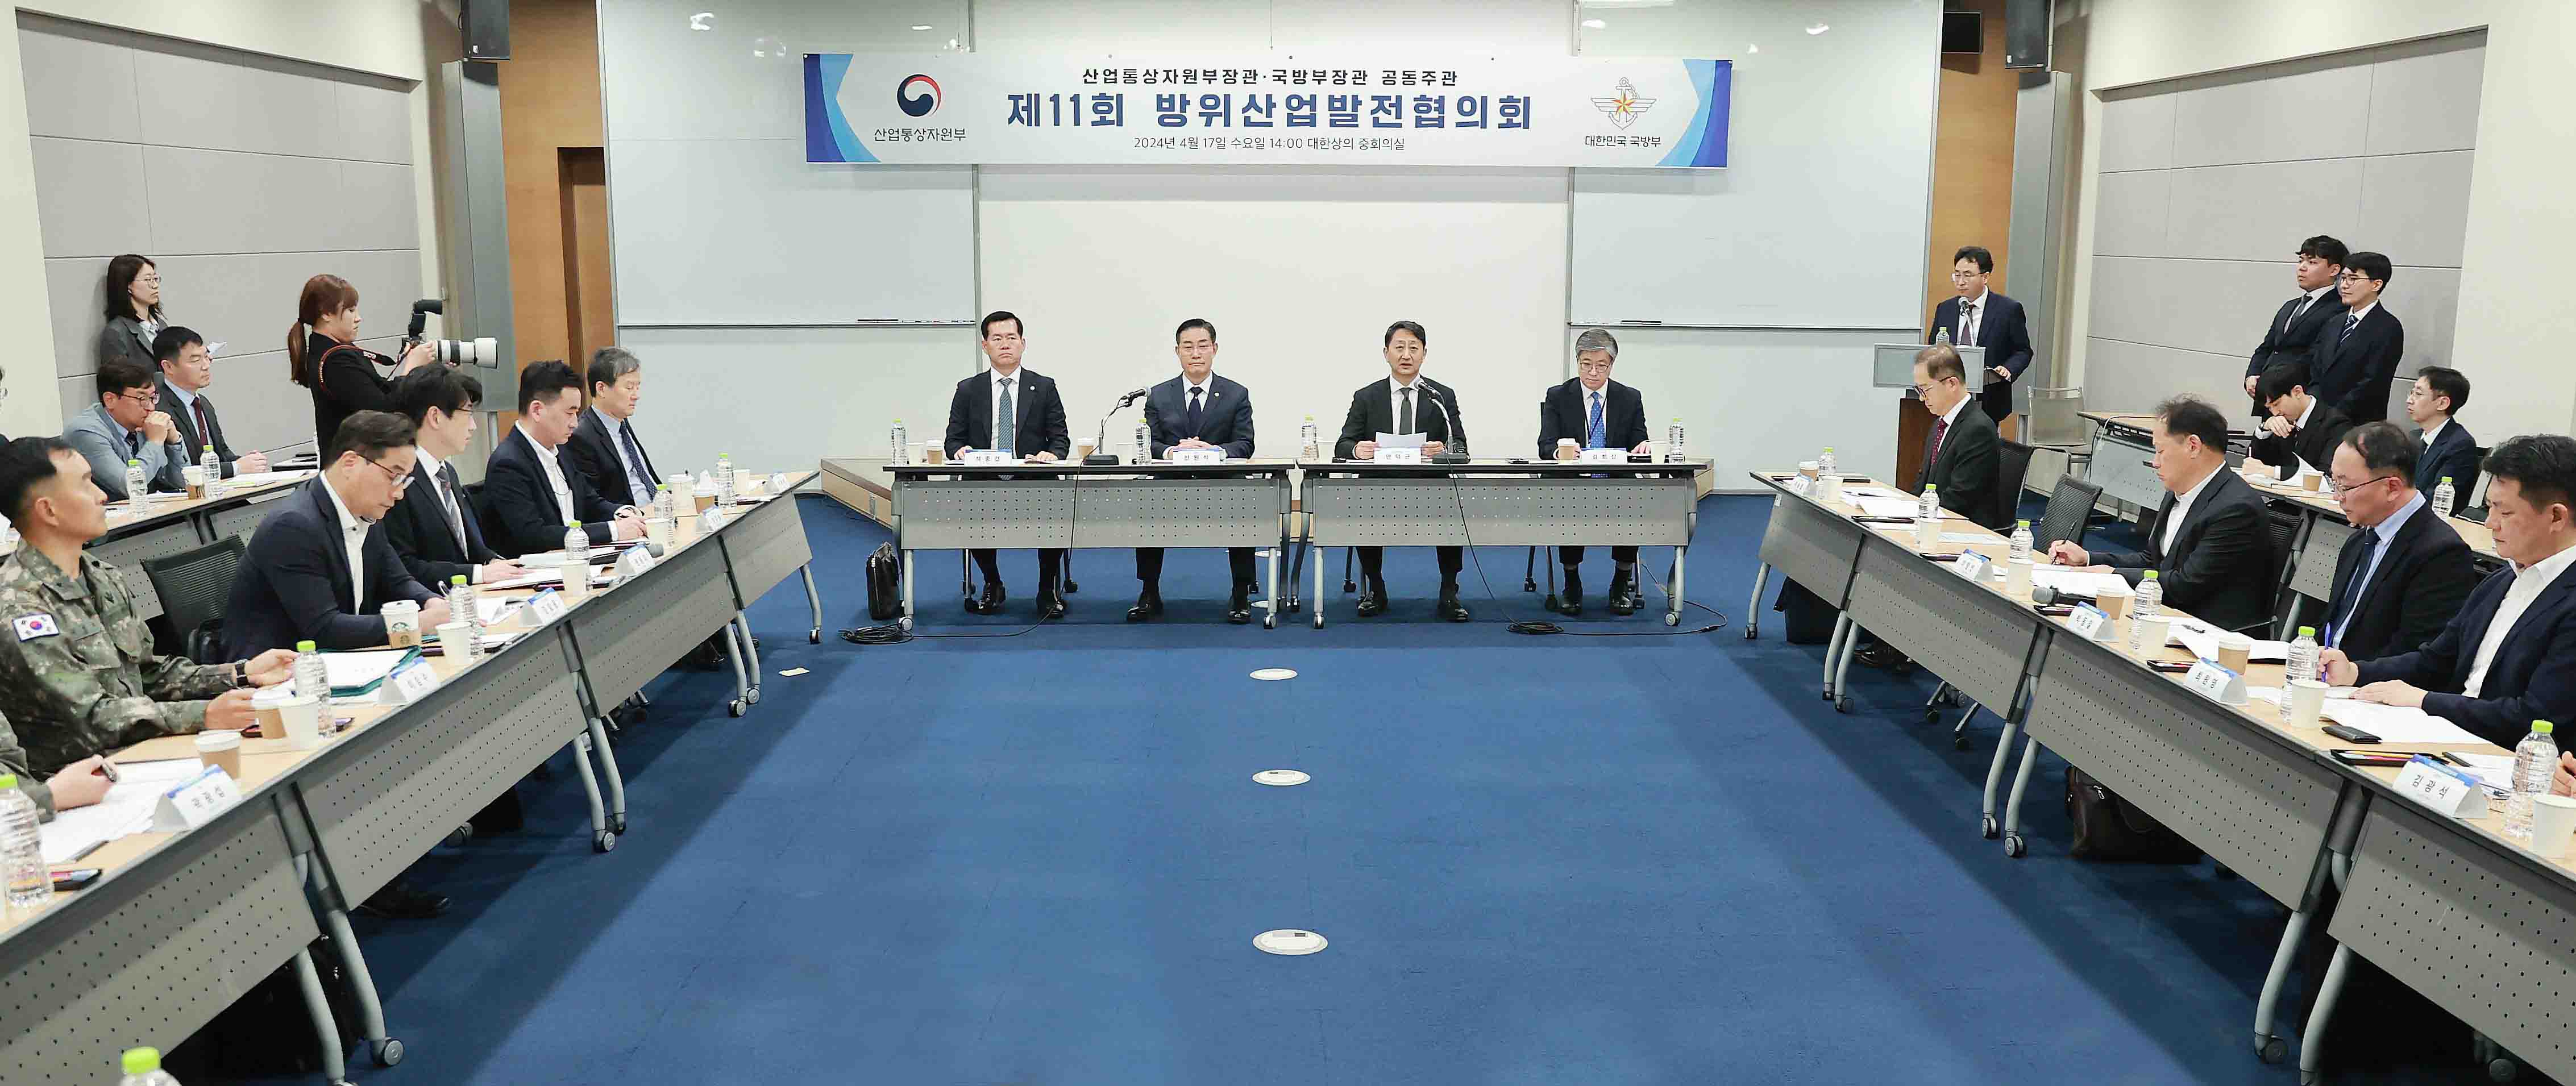 제11회 방위산업발전협의회 개최